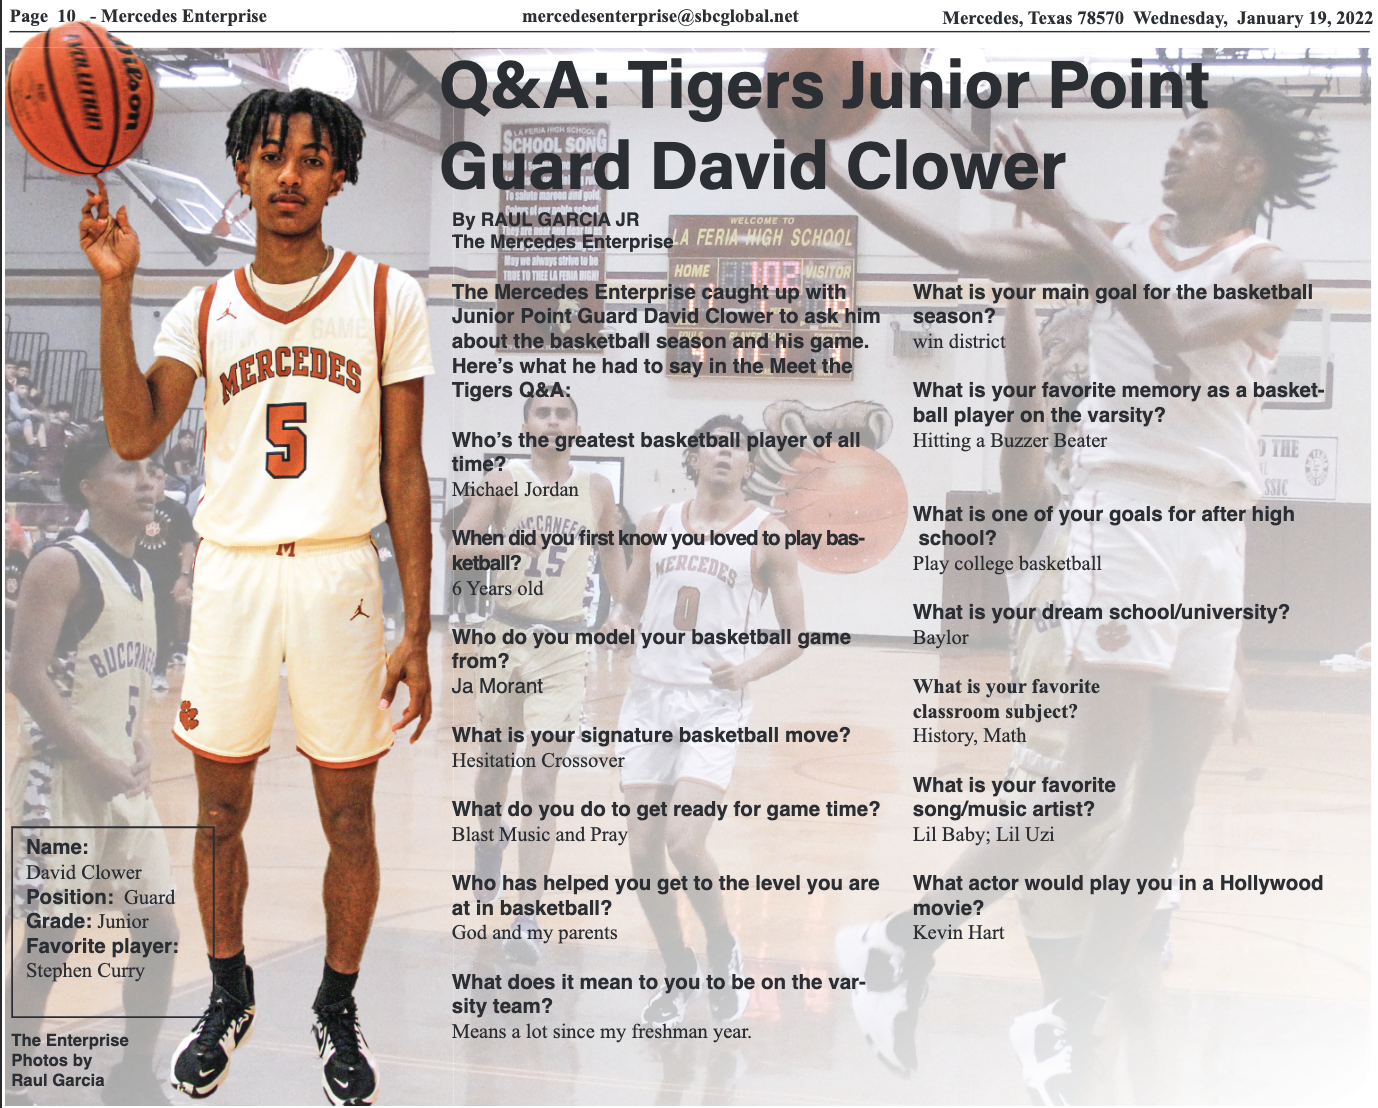 Q&A: Tigers Junior Point David Clower